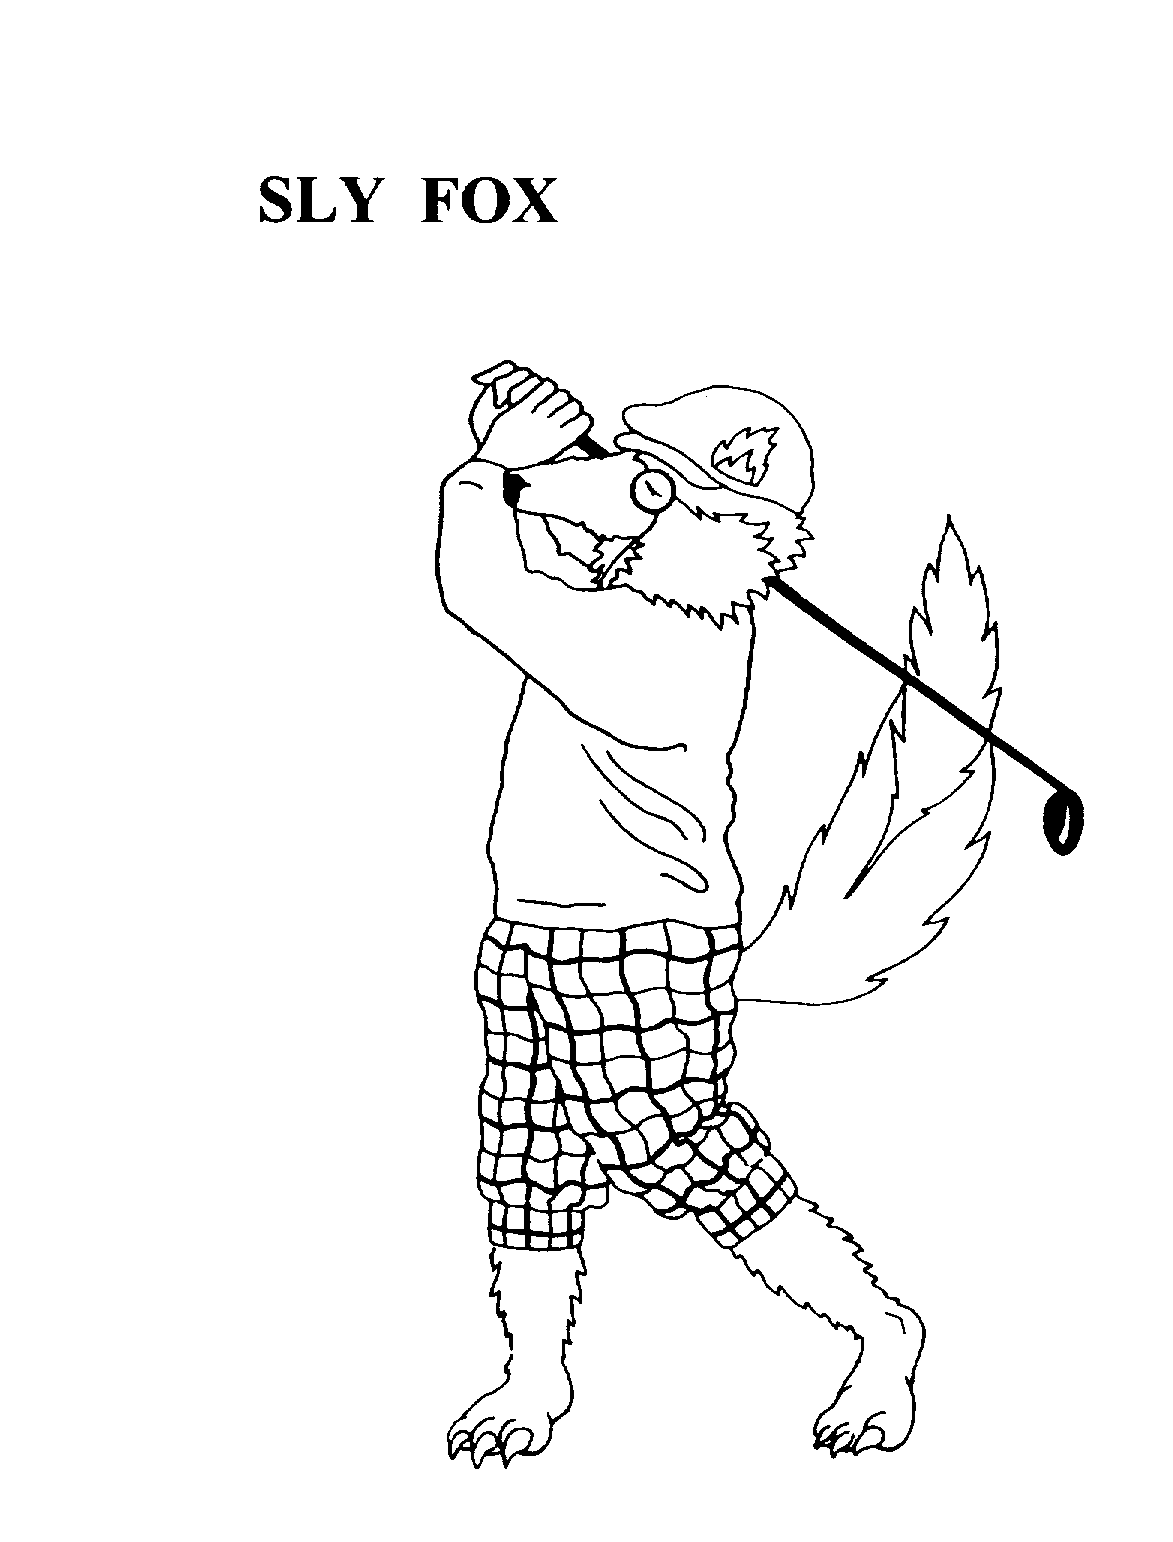 SLY FOX